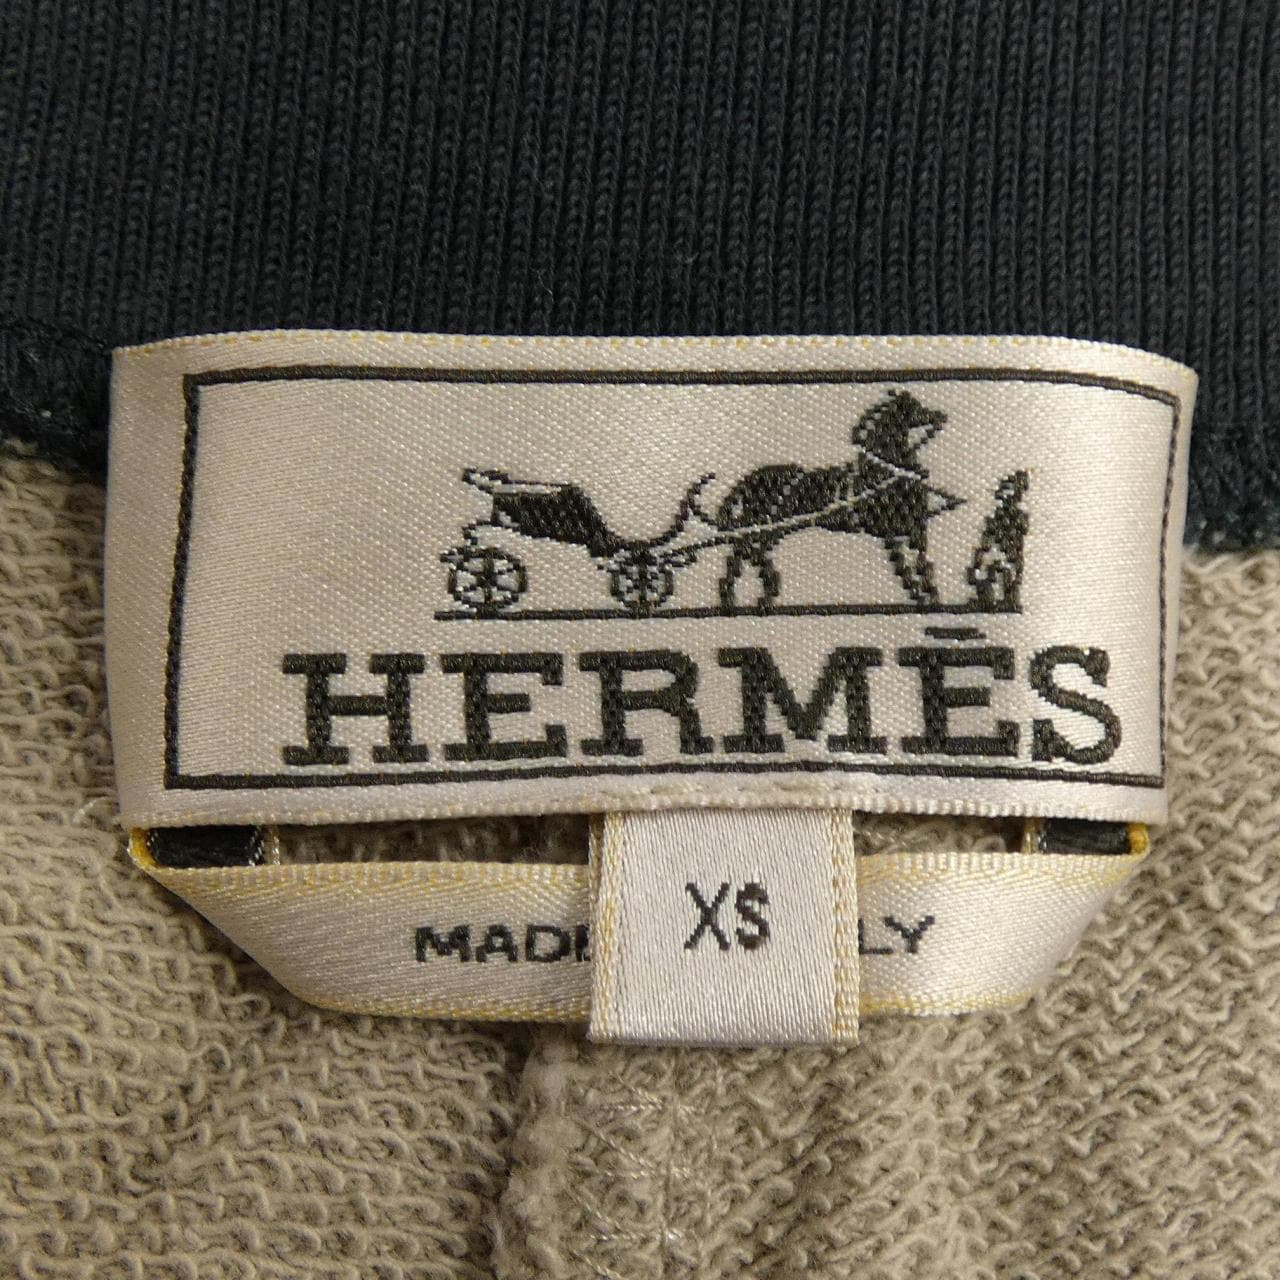 HERMES HERMES Shorts